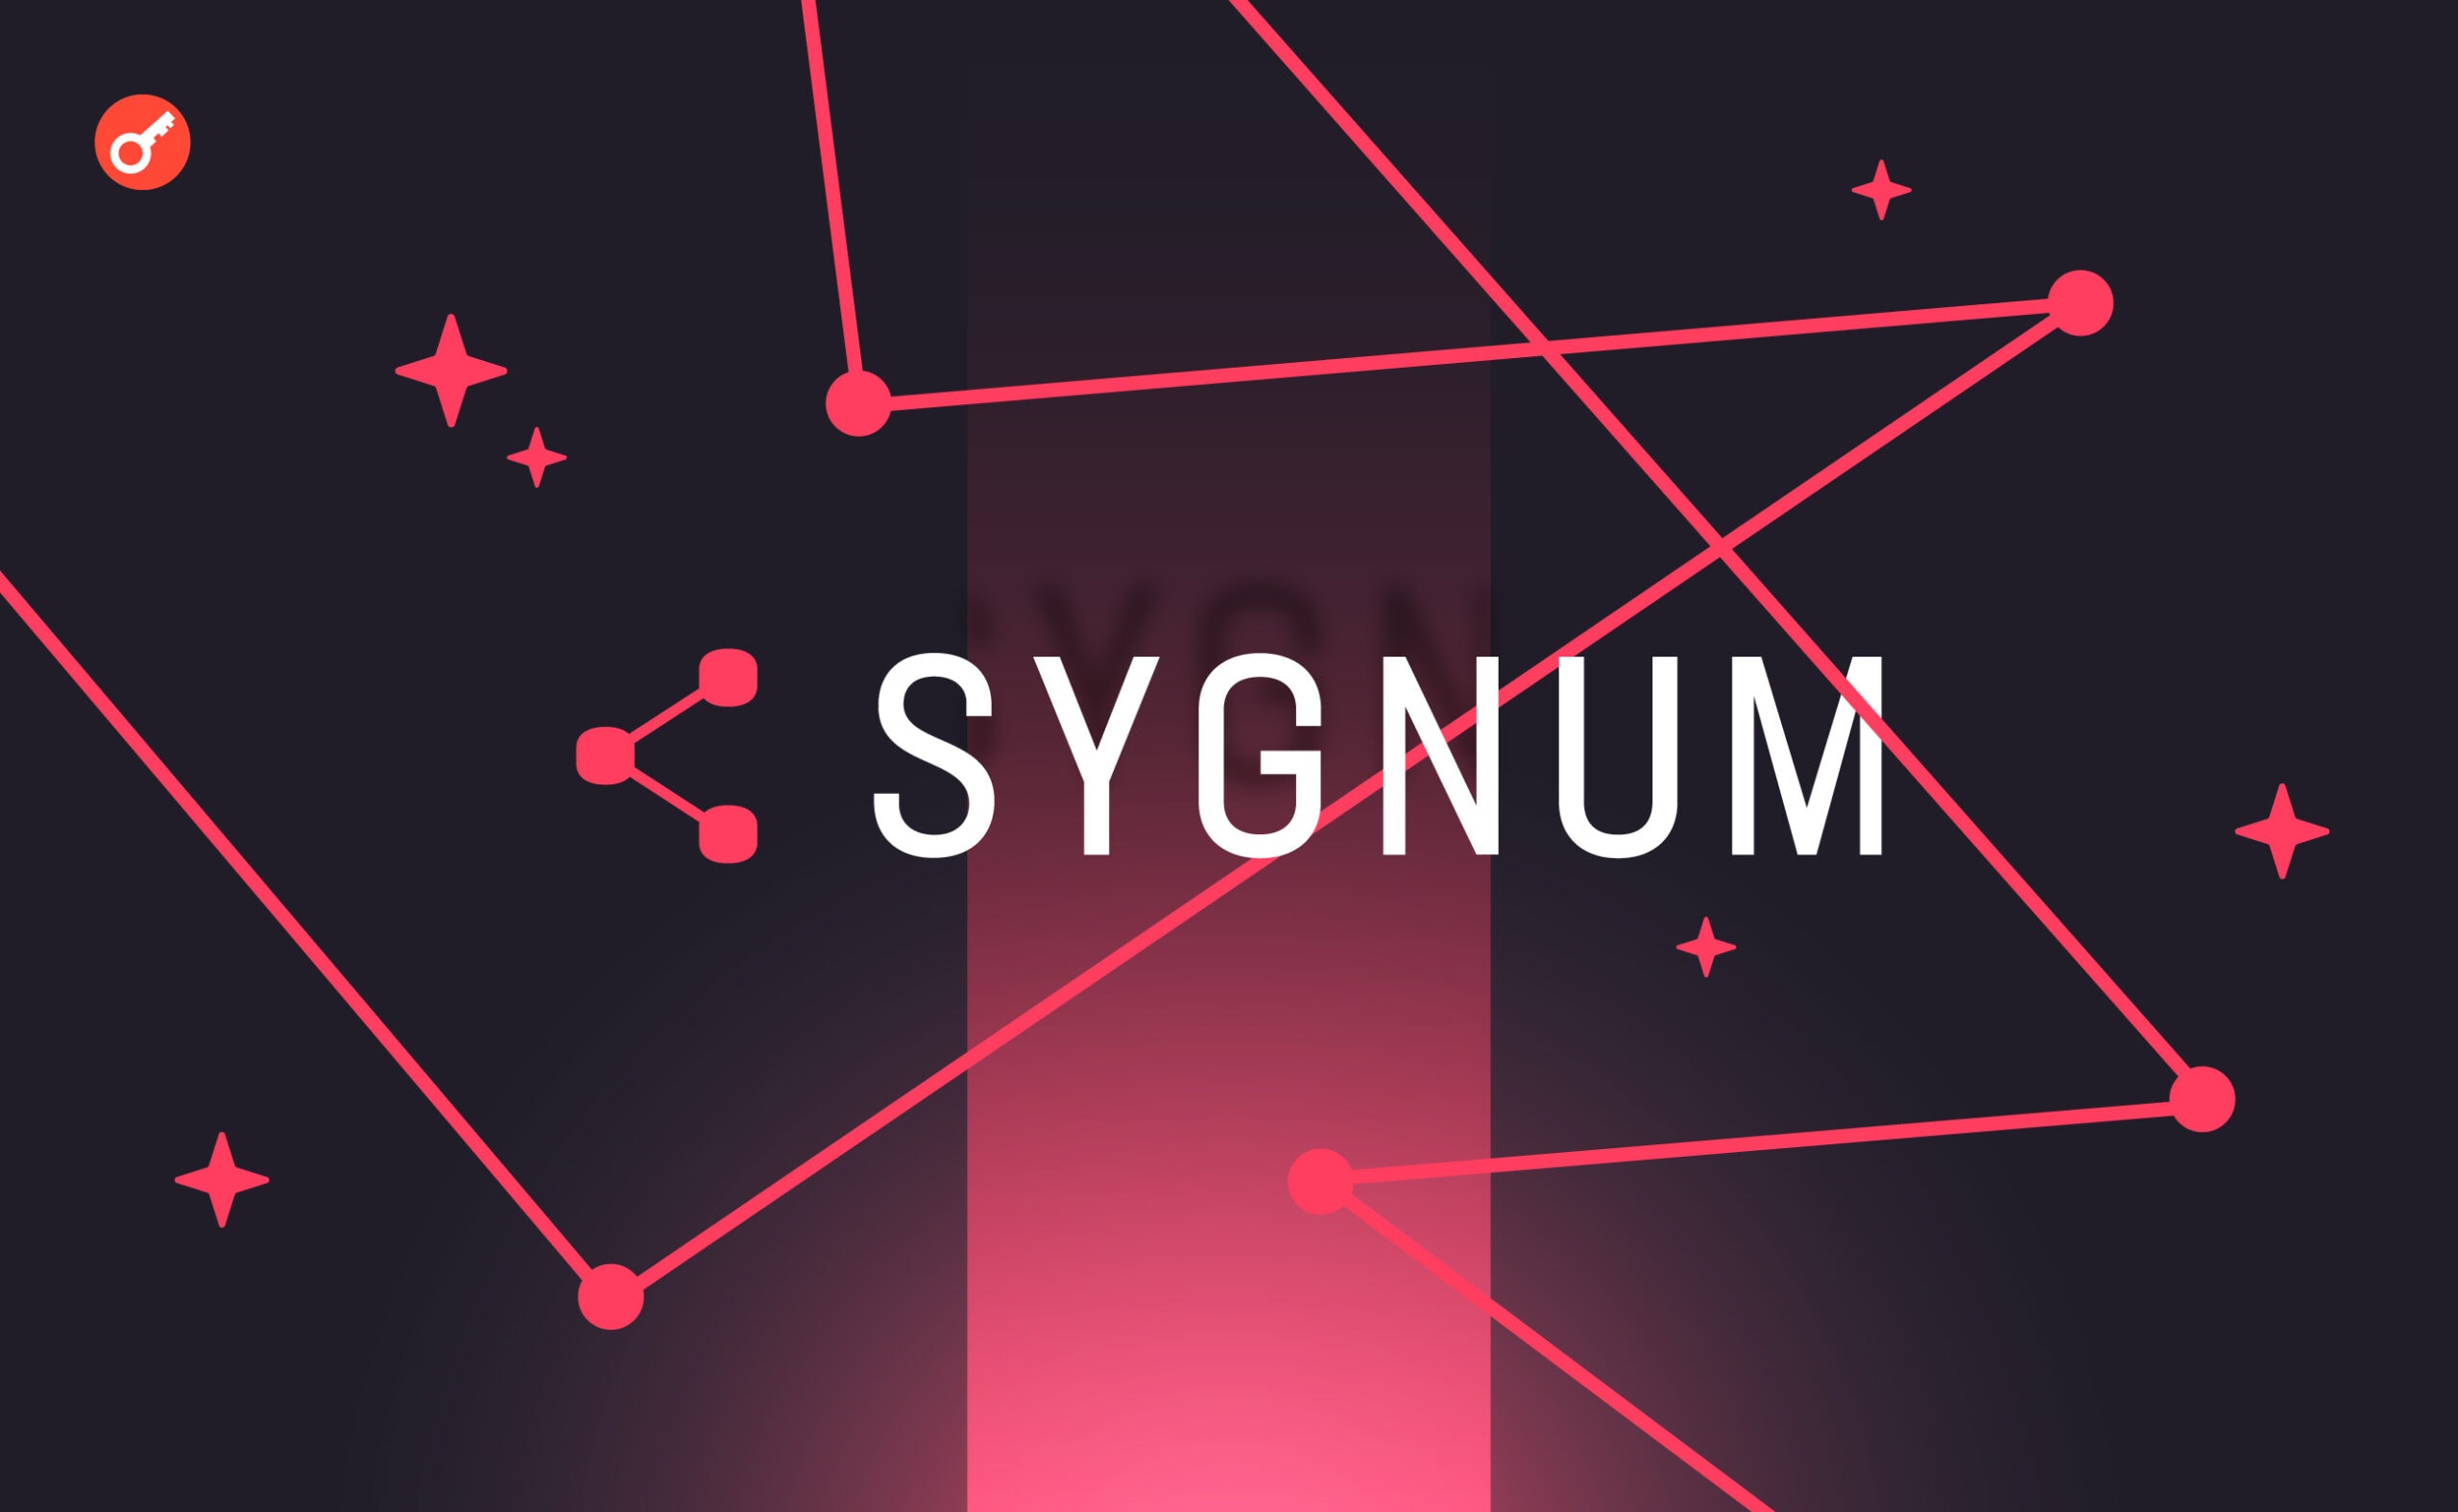 Sygnum отмечает рост спроса на криптовалюту среди институциональных инвесторов. Заглавный коллаж новости.